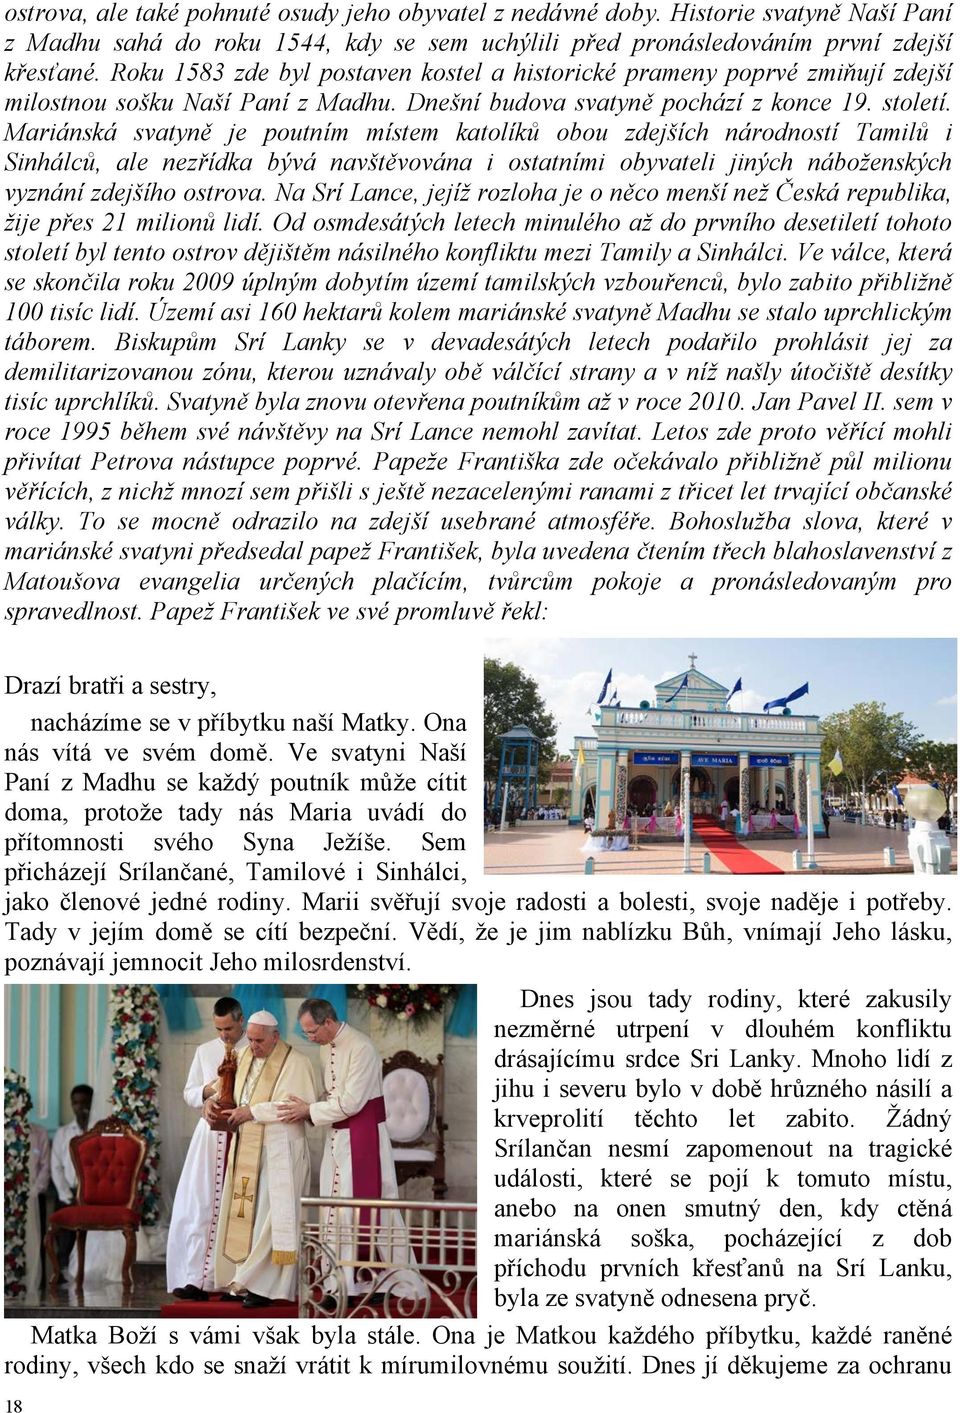 Mariánská svatyně je poutním místem katolíků obou zdejších národností Tamilů i Sinhálců, ale nezřídka bývá navštěvována i ostatními obyvateli jiných náboženských vyznání zdejšího ostrova.